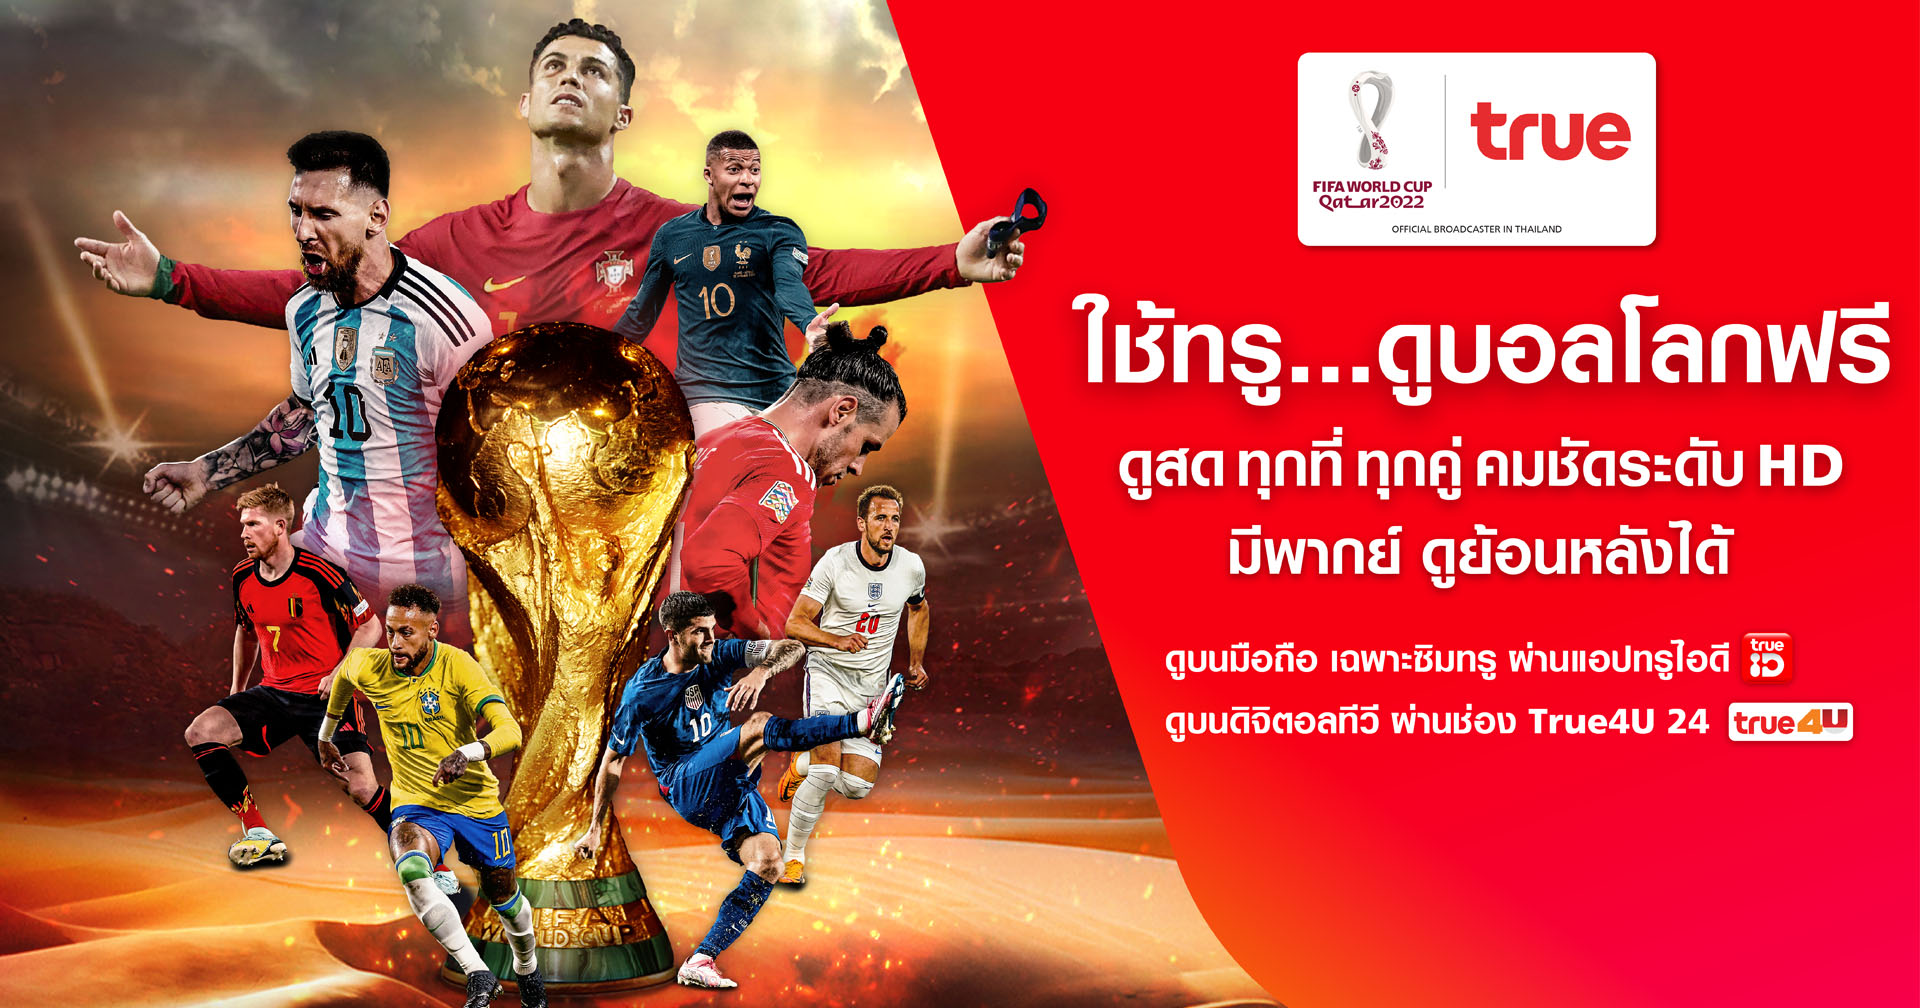 กลุ่มทรู ร่วมสานฝันคอบอลชาวไทย ถ่ายทอดสด World Cup 2022 ให้ชมฟรี ครบทุกแมตช์ ผ่านทุกแพลตฟอร์ม